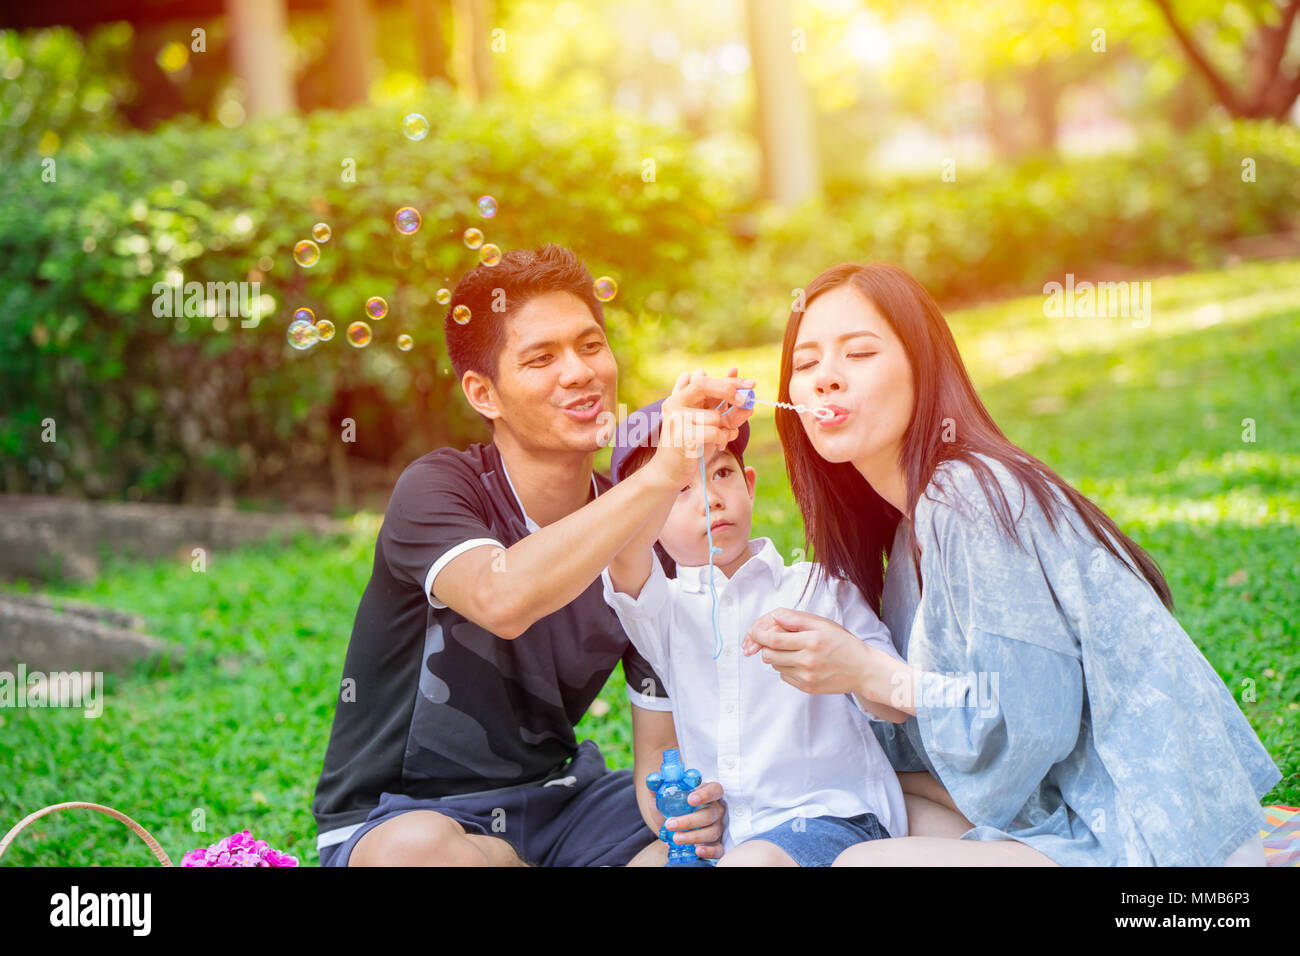 Asian teen famiglia un bambino felice vacanza momento picnic nel parco. Riproduzione di bolla. Foto Stock